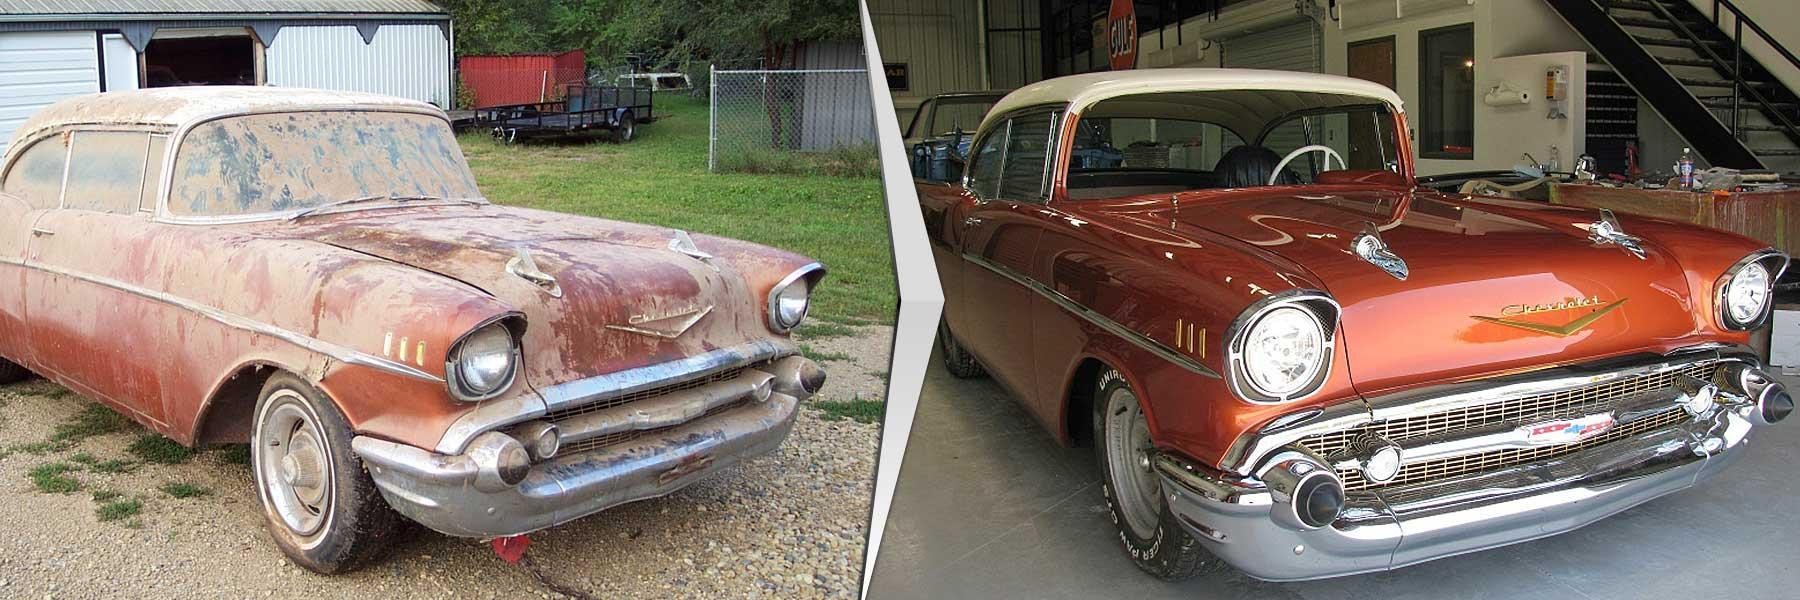 Исследование мира реставрации раритетных автомобилей: сохранение автомобильной истории